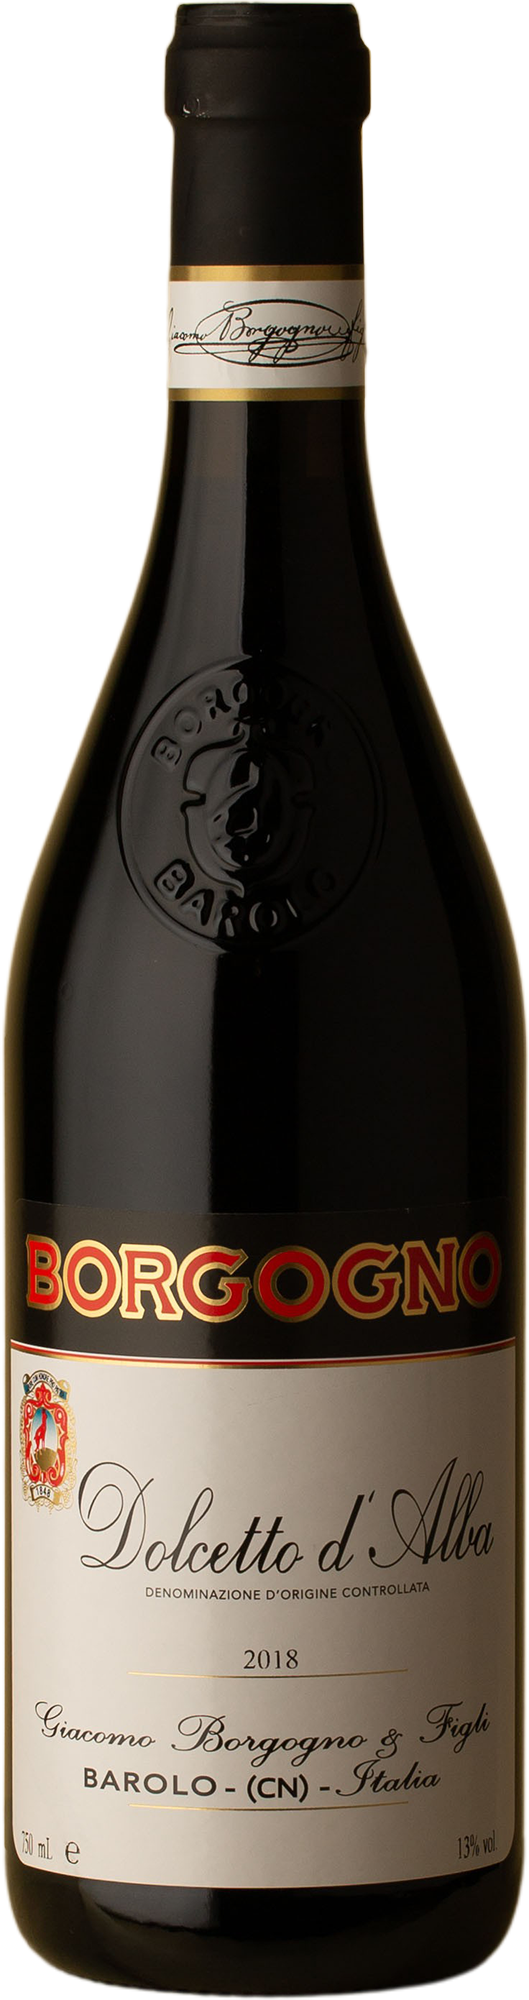 Borgogno - Dolcetto d'Alba Dolcetto 2018 Red Wine